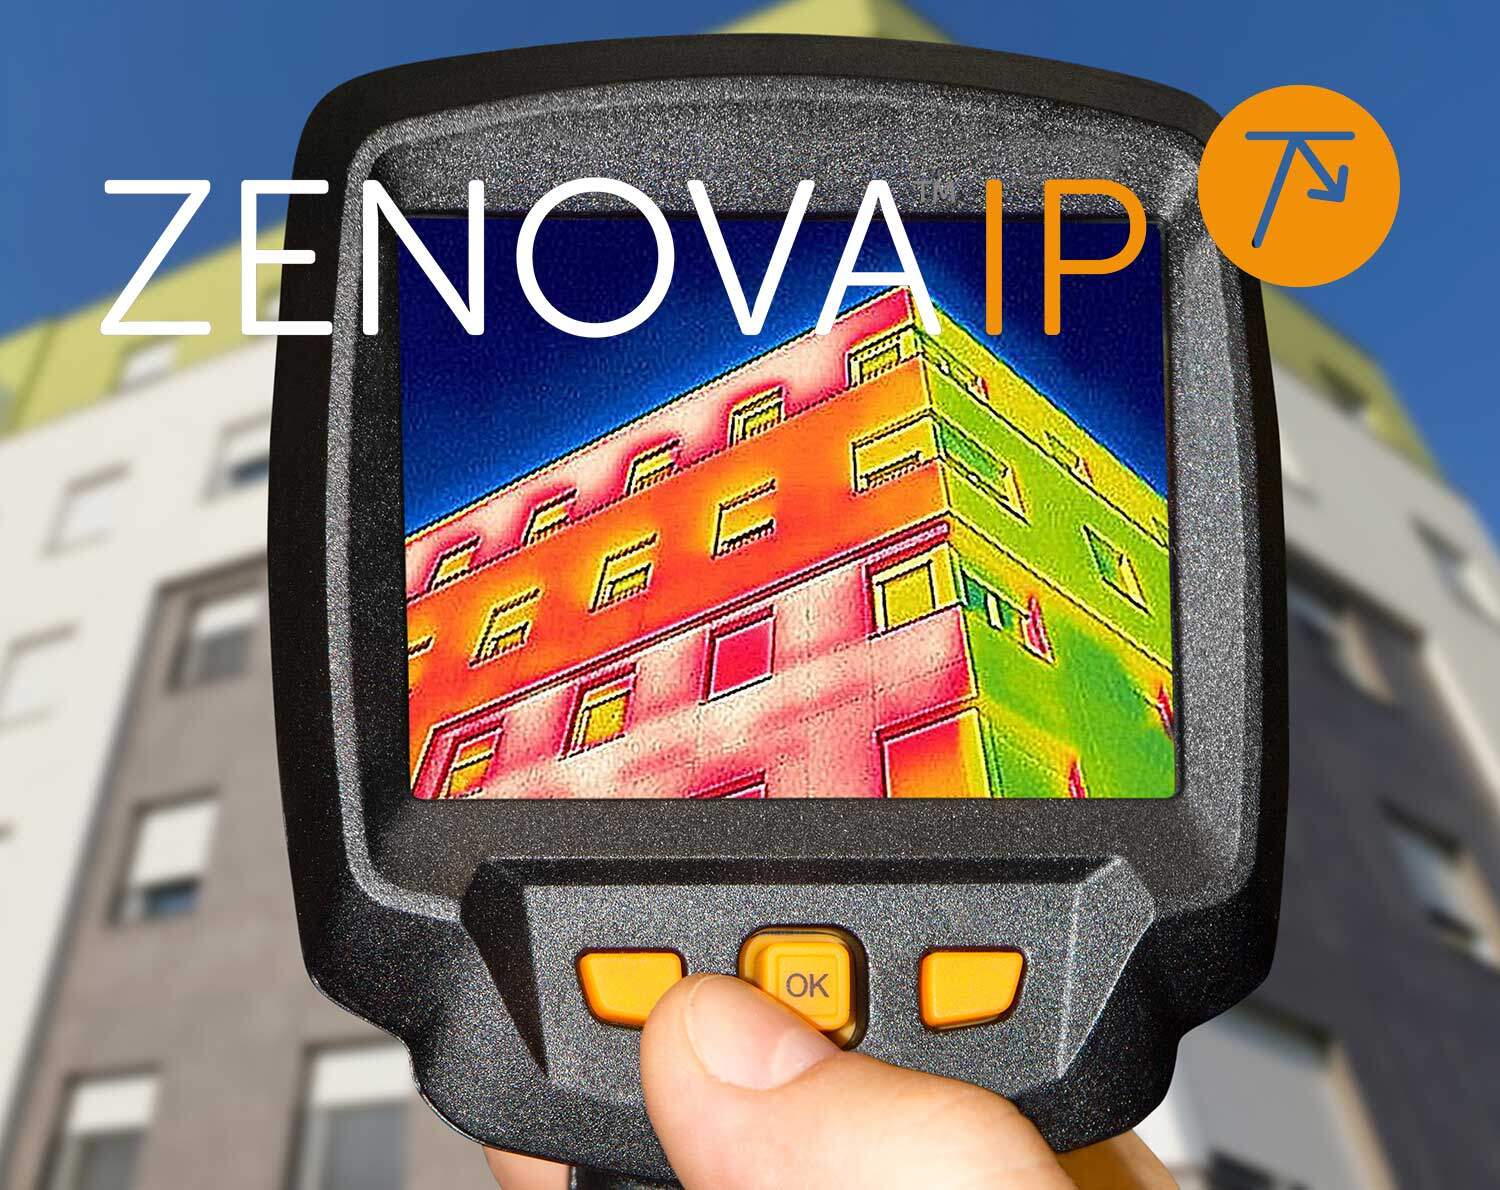 ZENOVA IP Thermal Insulating Paint